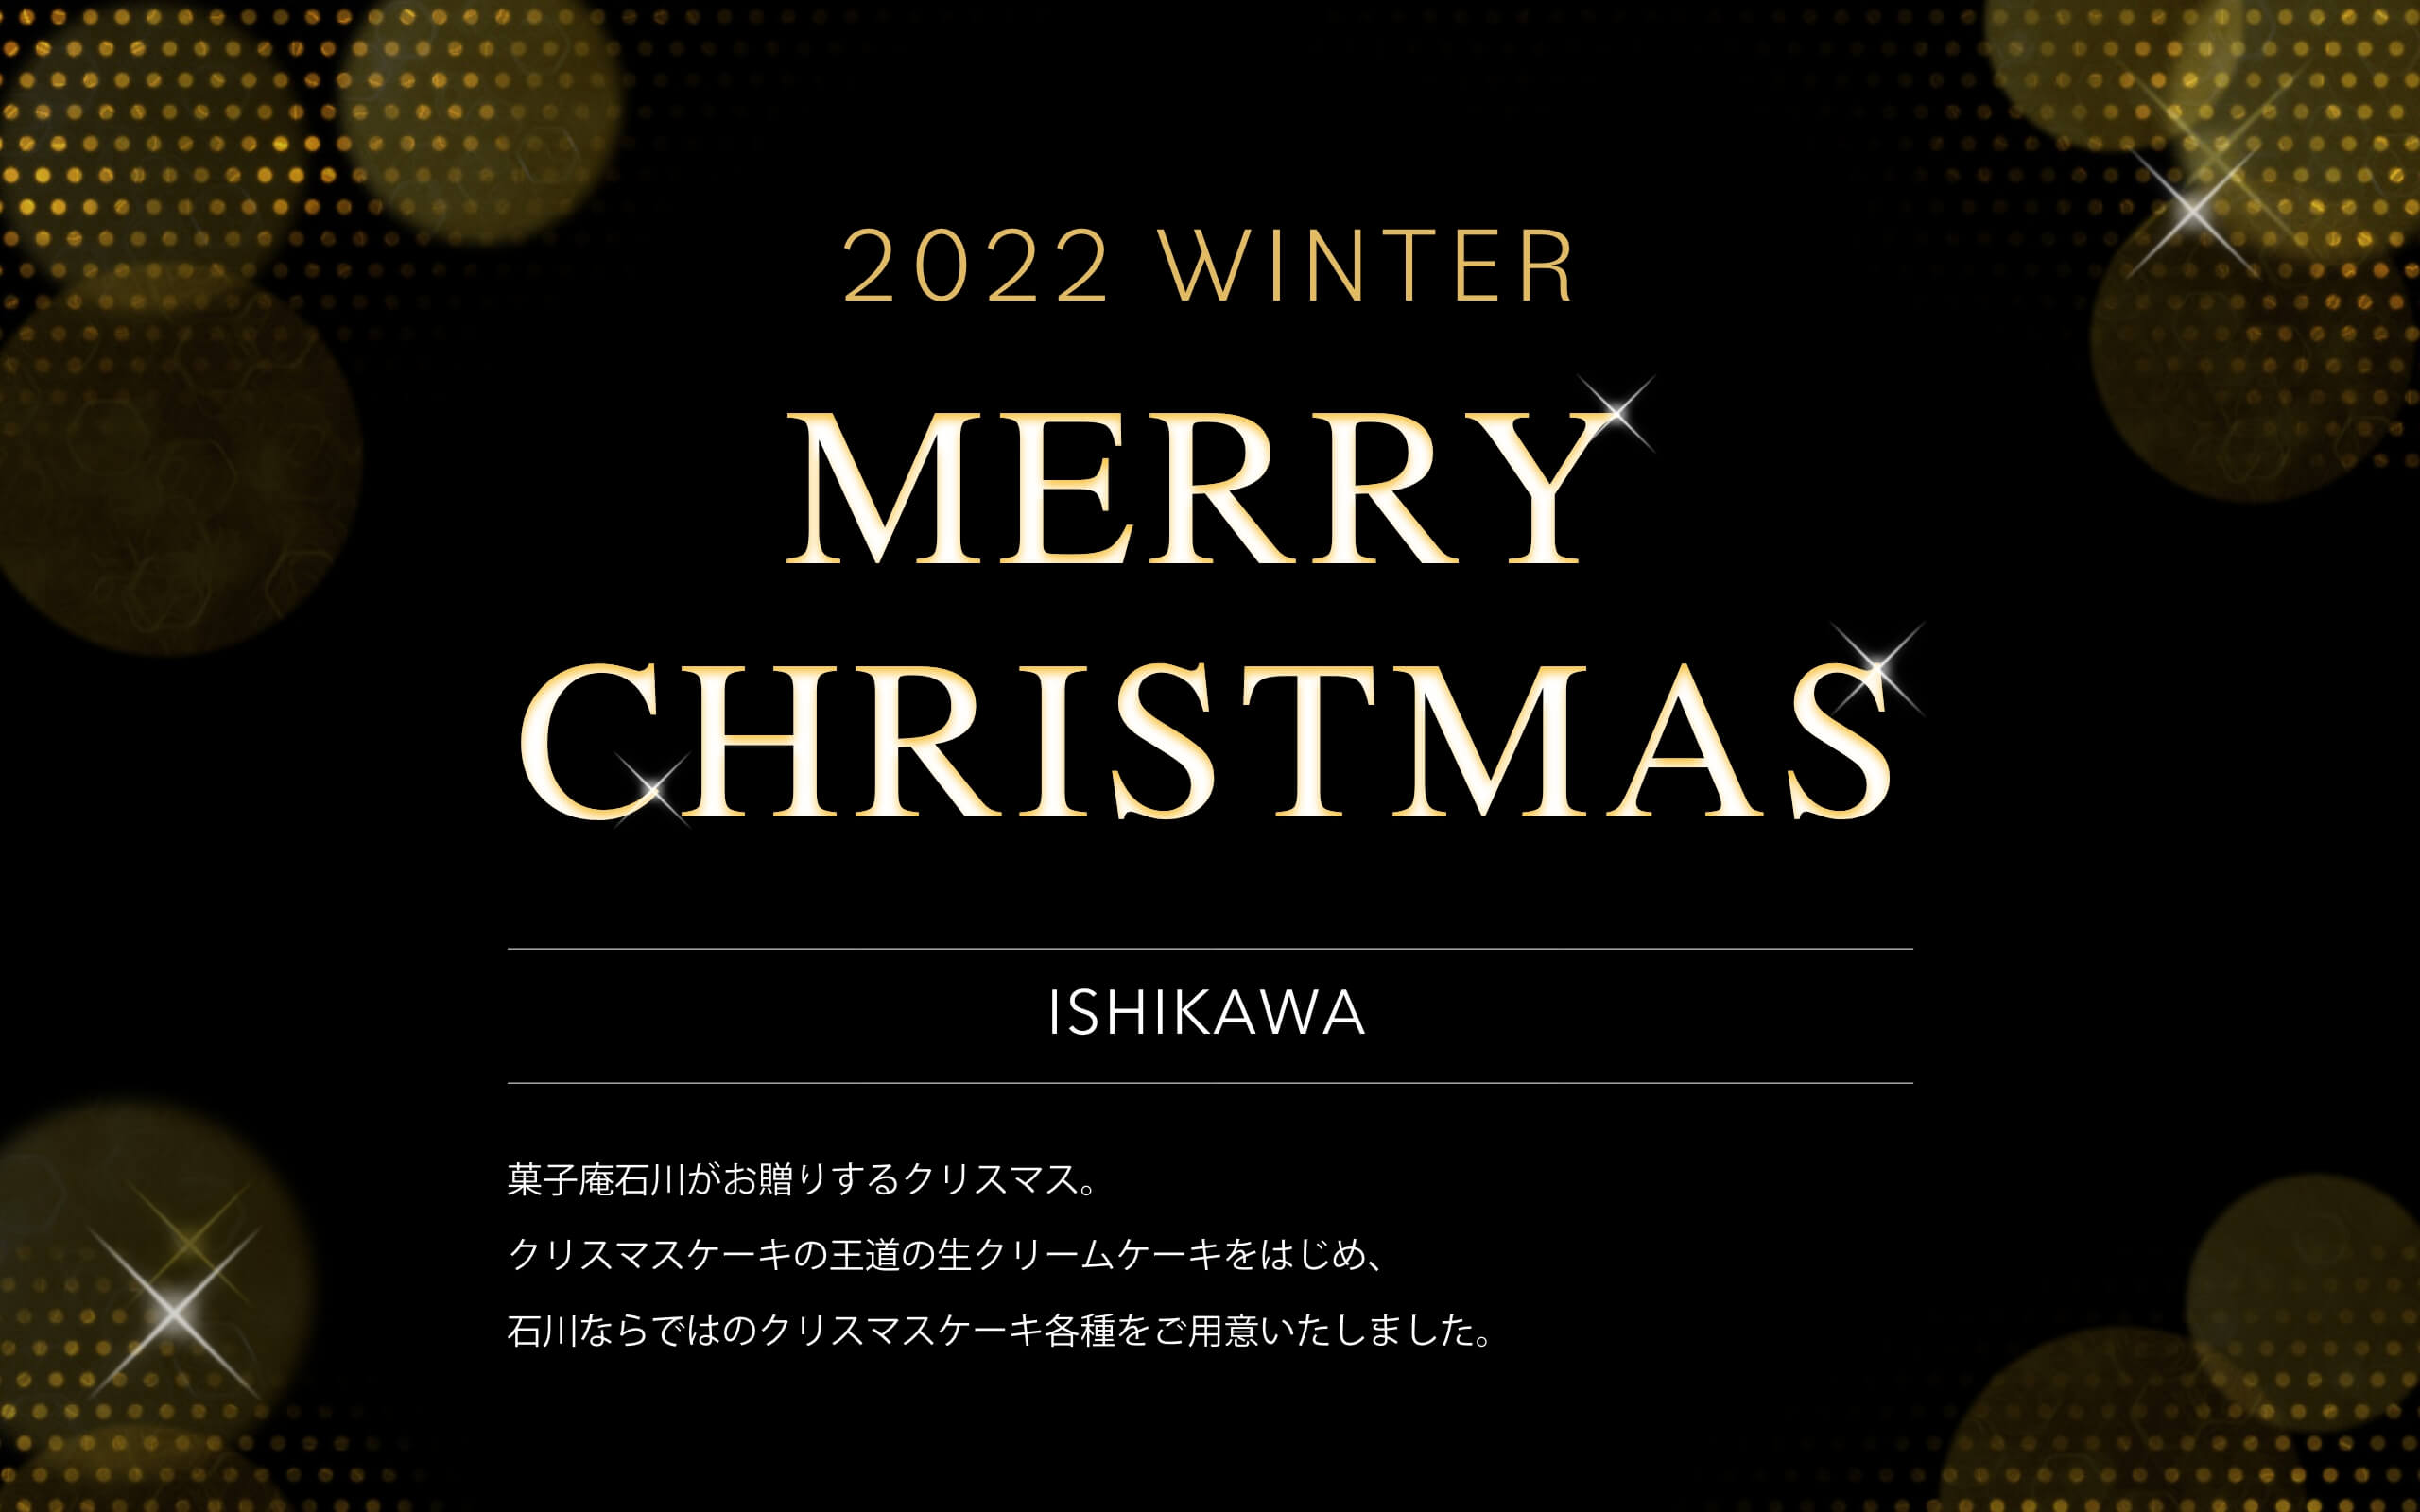 2022 WINTER MERRY CHRISTMAS ISHIKAWA 菓子庵石川がお贈りするクリスマス。
クリスマスケーキの王道の生クリームケーキをはじめ、
石川ならではのクリスマスケーキ各種をご用意いたしました。